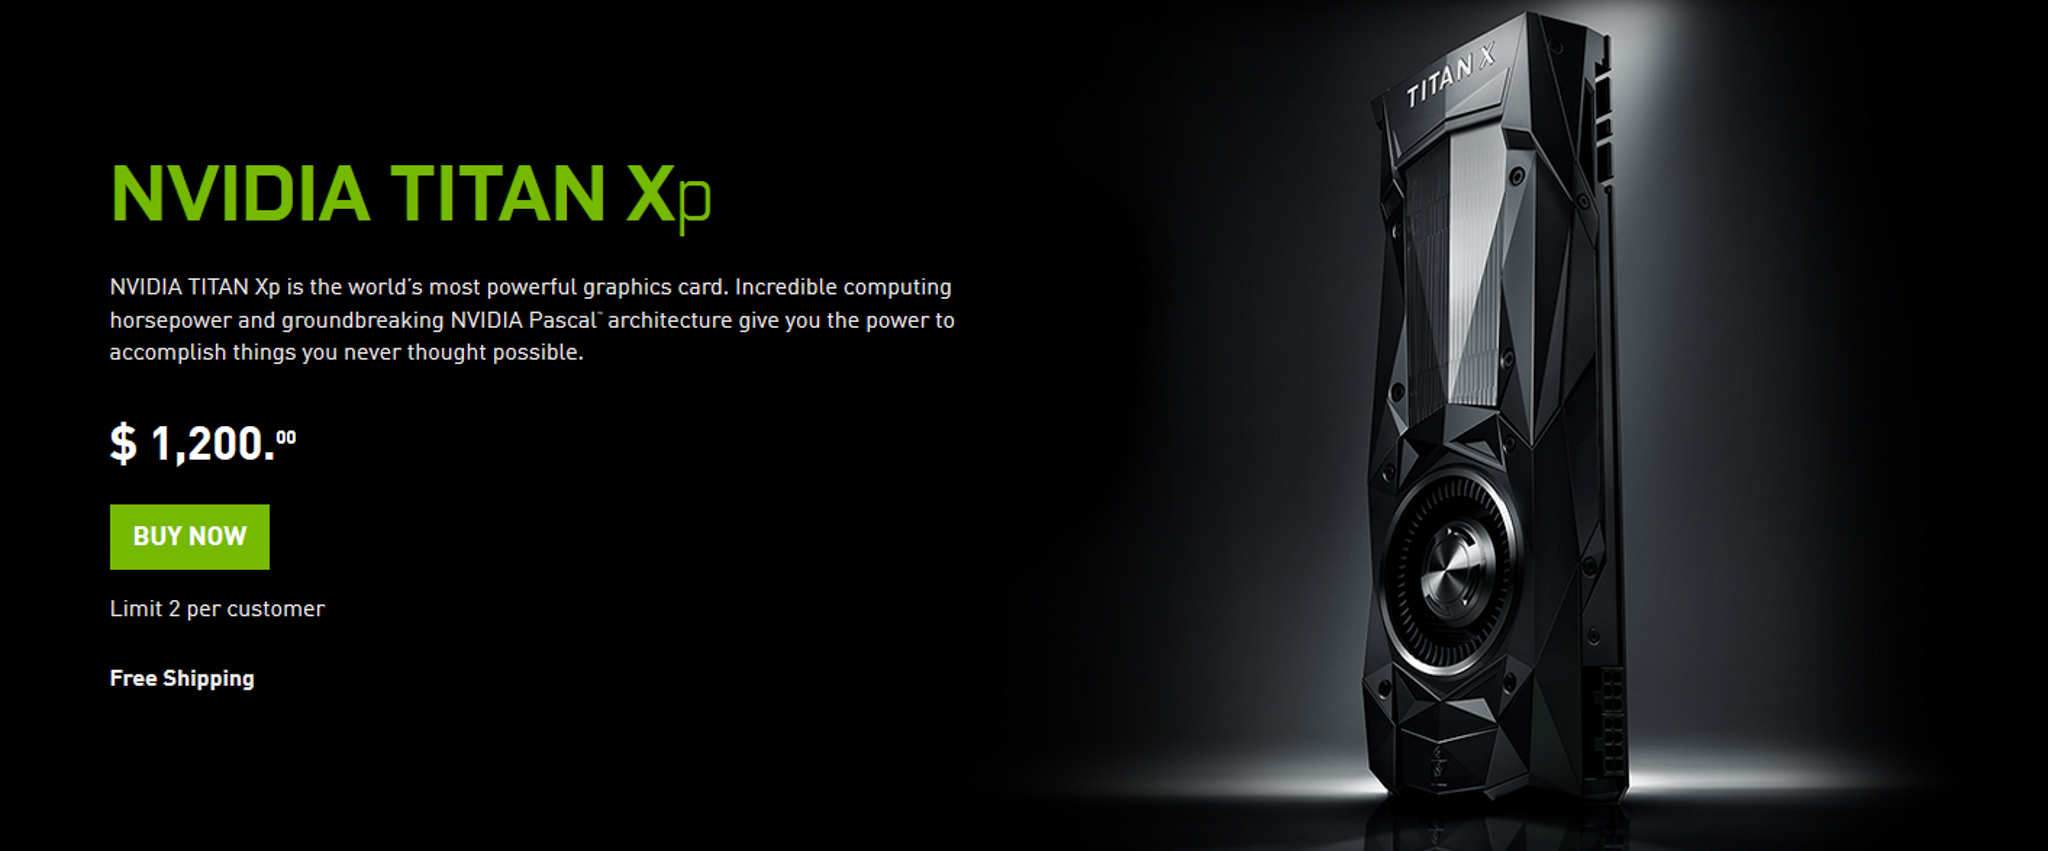 Nvidia Titan Xp chính thức: 3840 nhân CUDA, 8K@60Hz HDR, hiệu năng 12,15 TFLOPS, giá 1200 USD